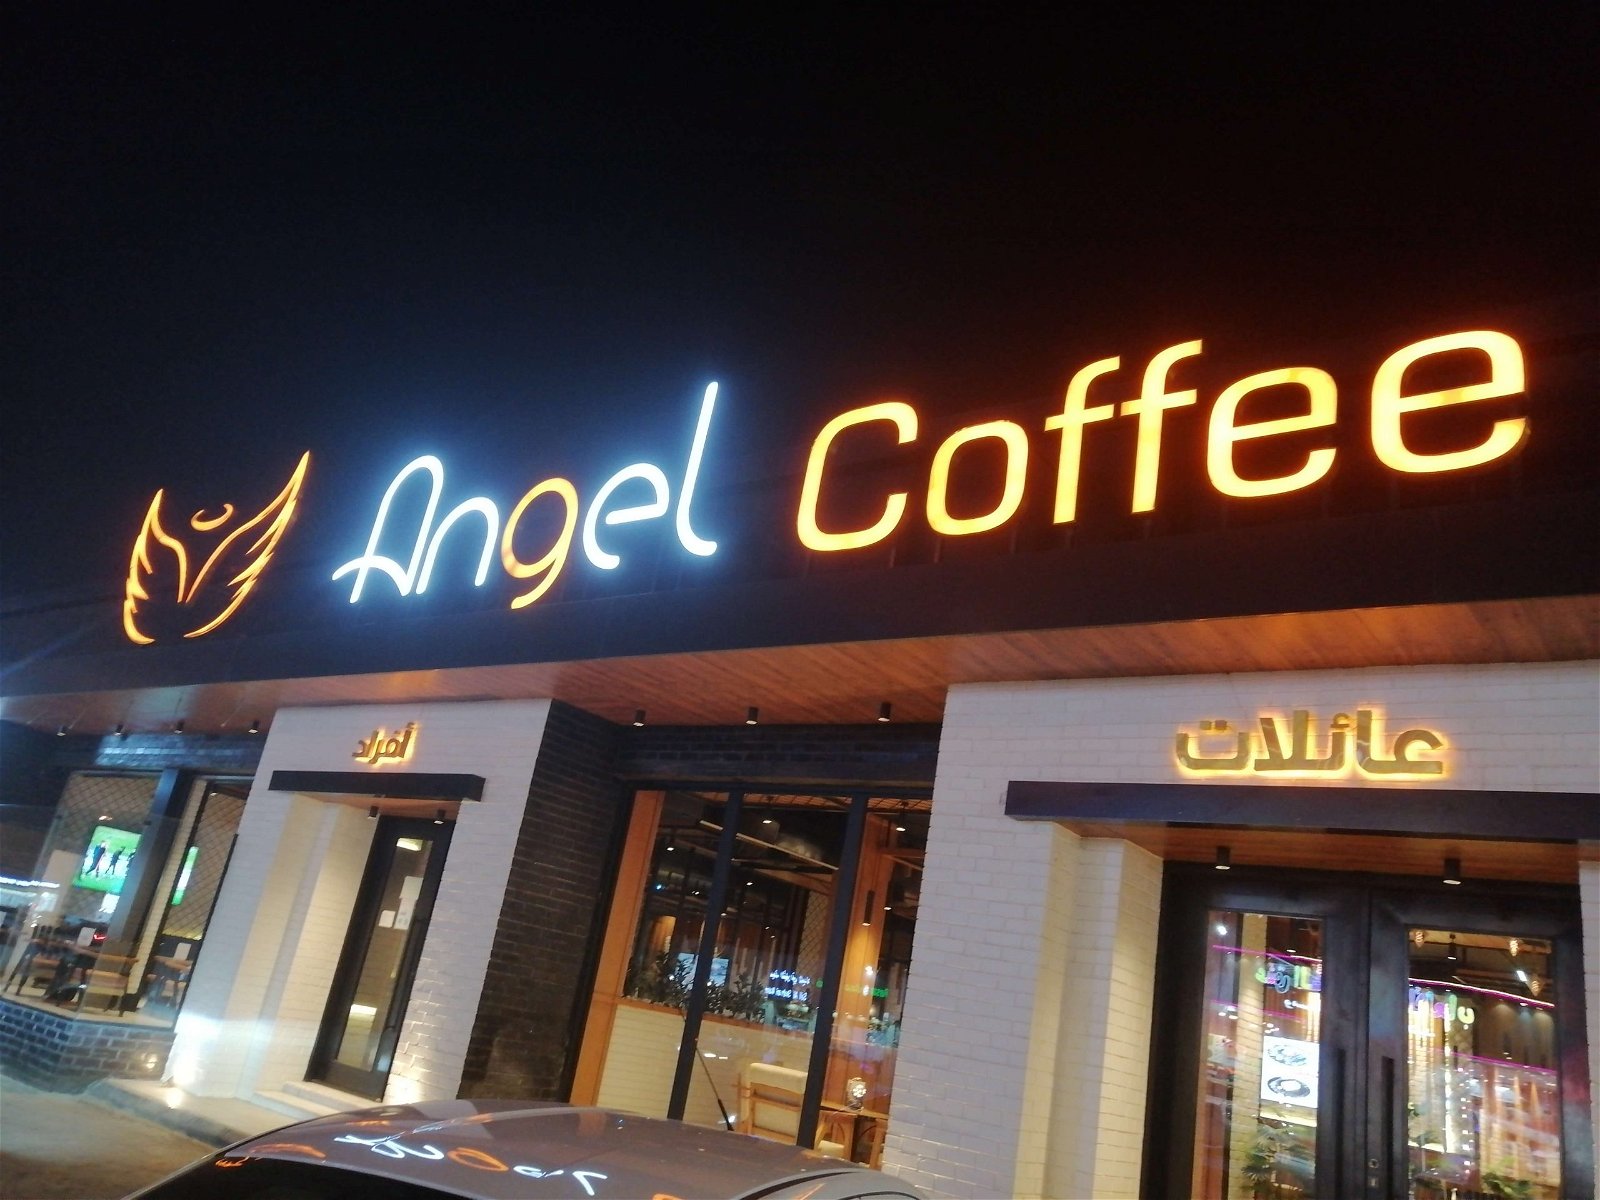 انجل كوفي Angel Coffee